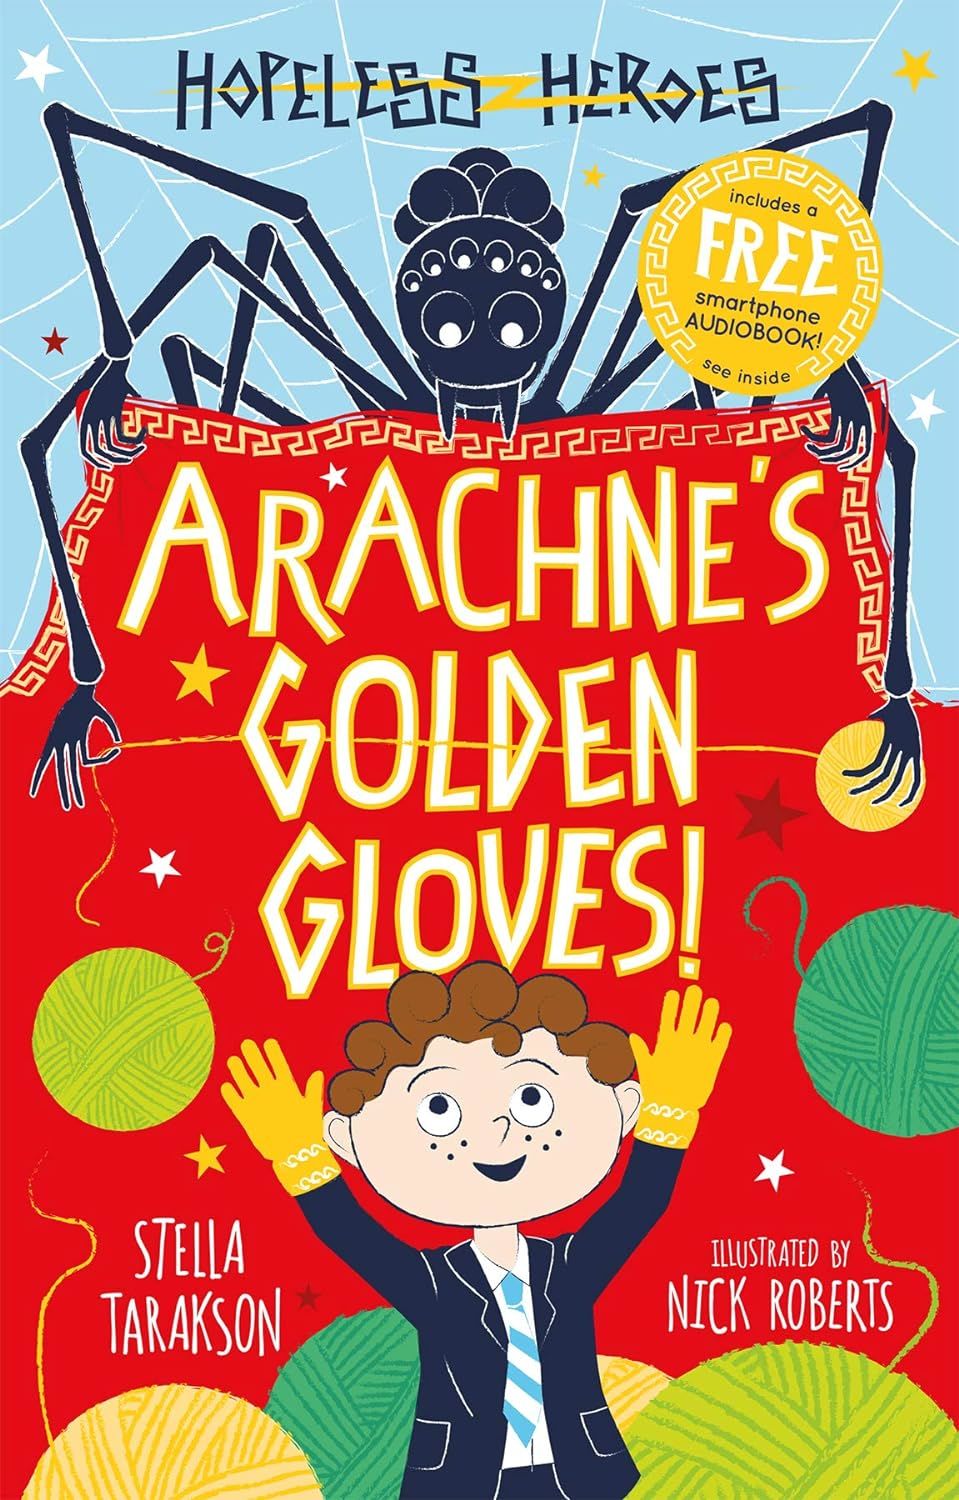 Arachne's Golden Gloves! , Hopeless Heroes 3